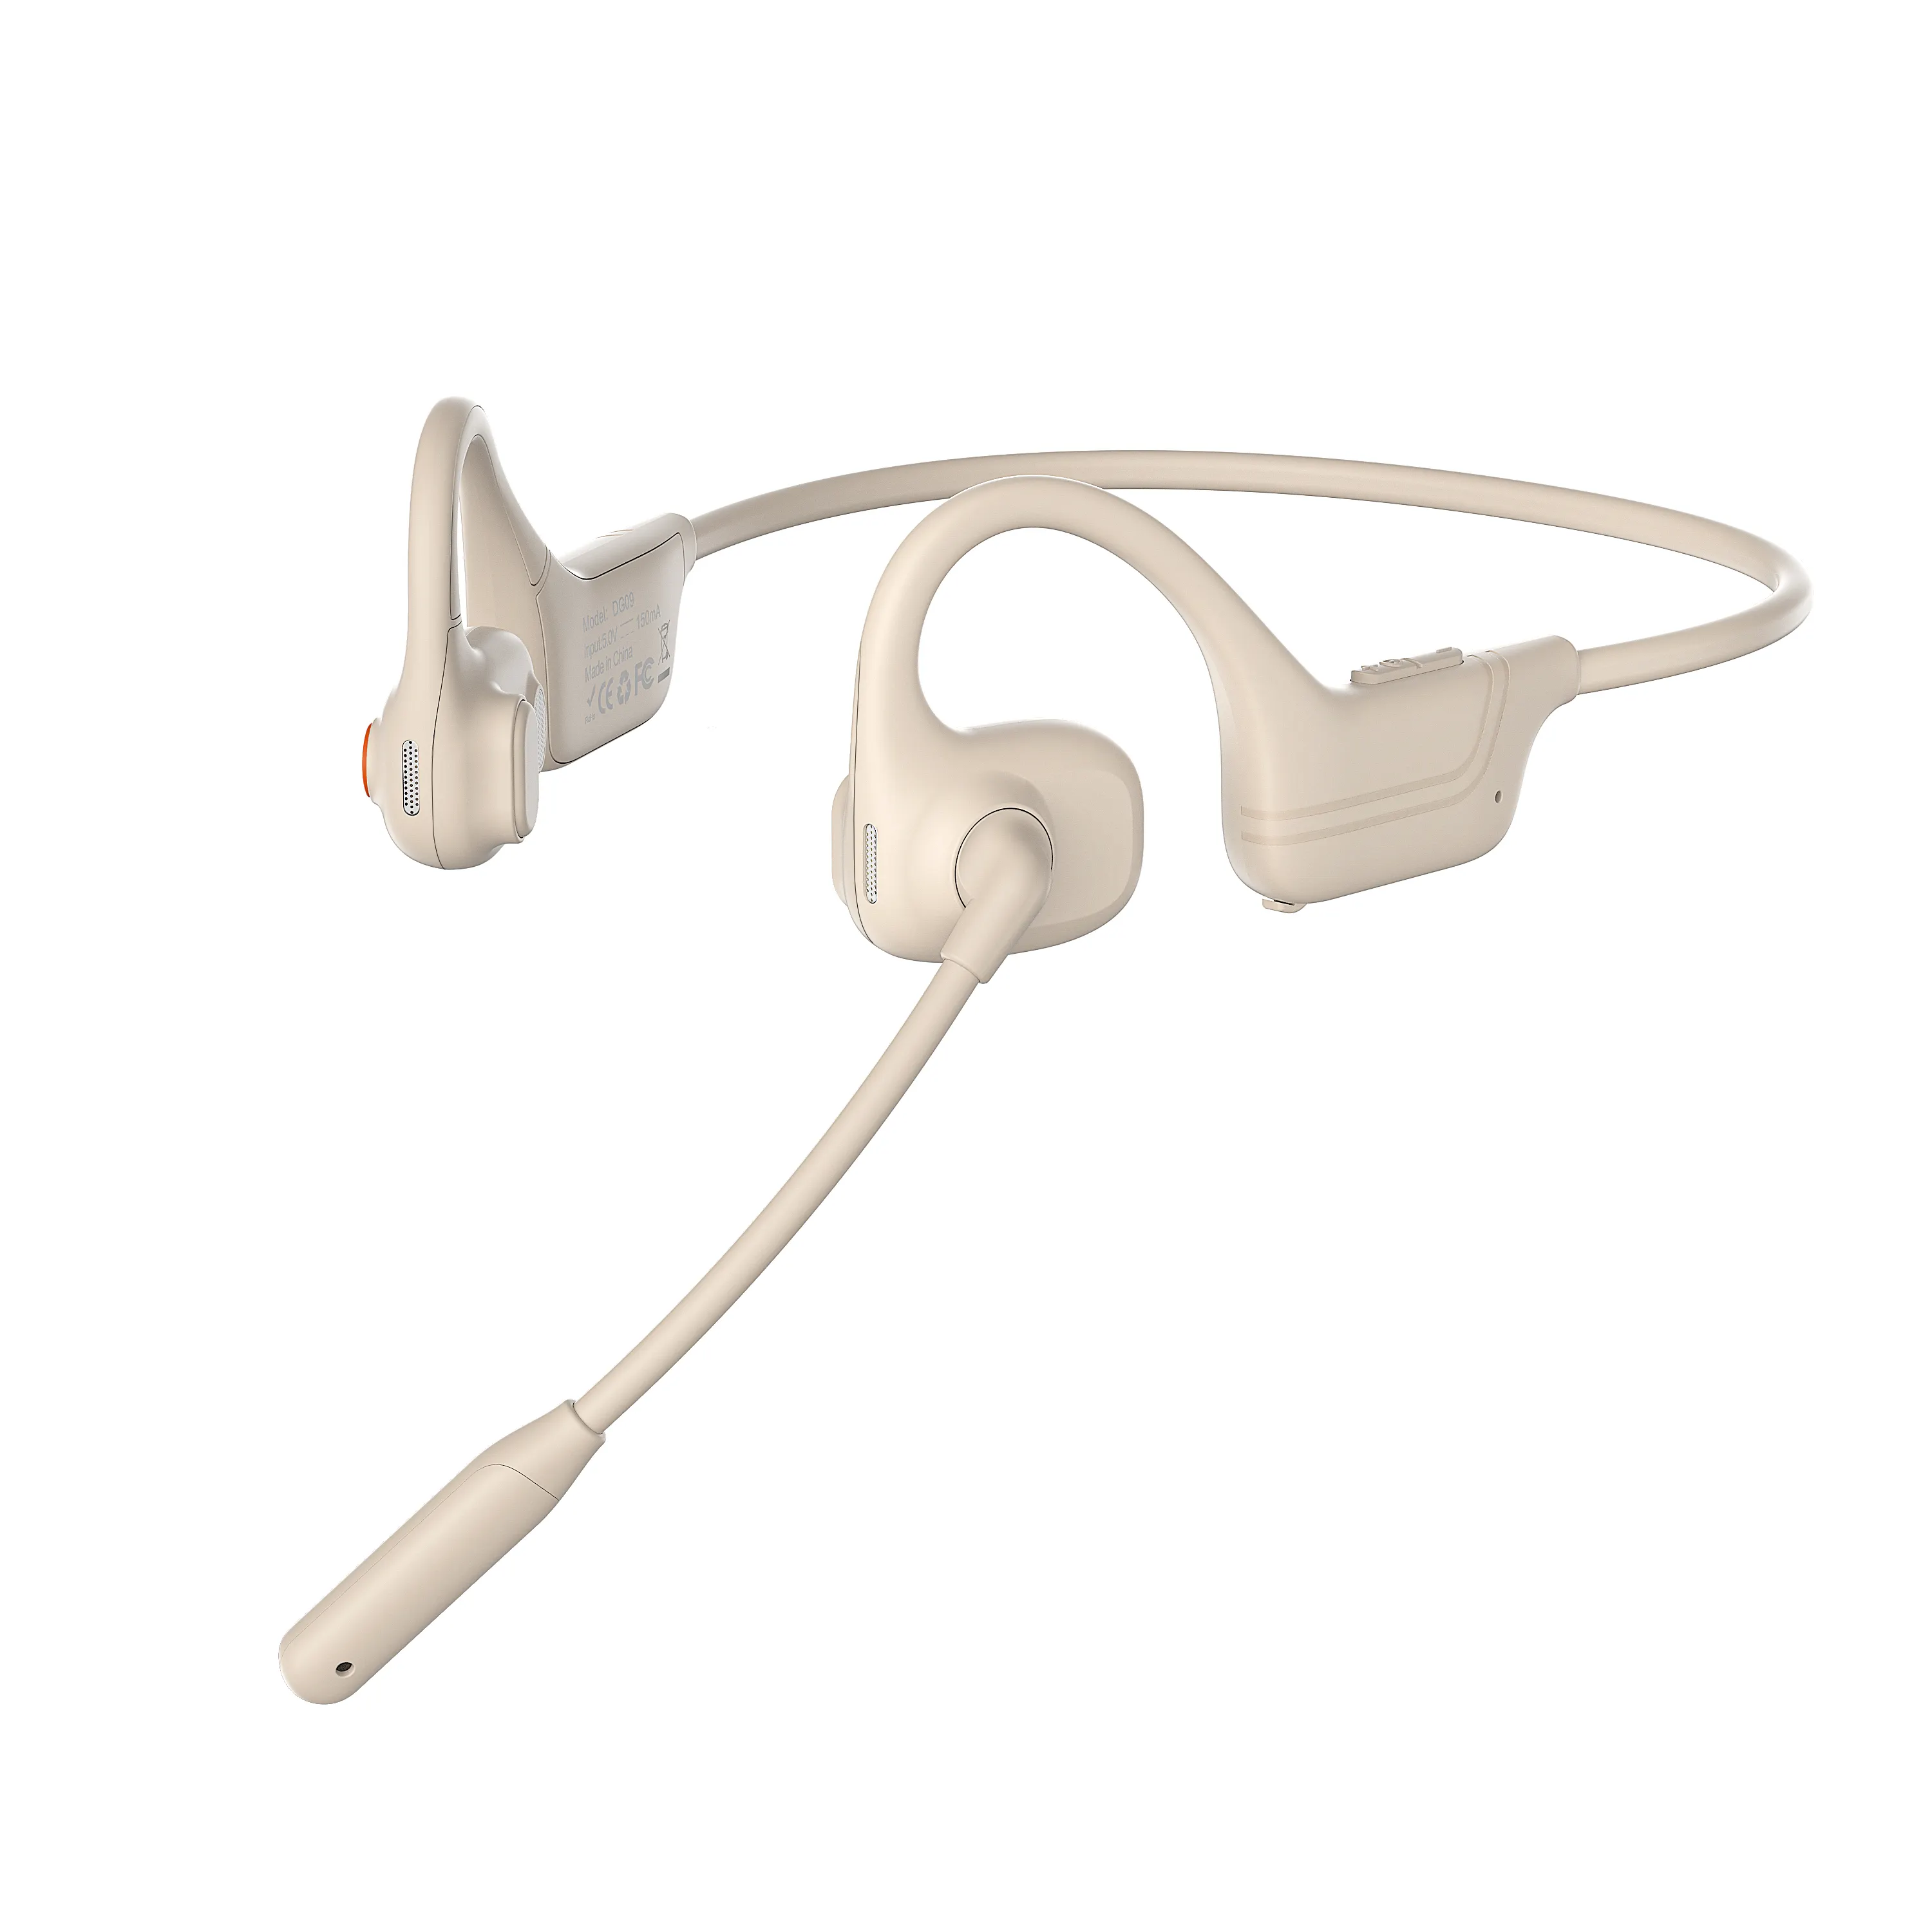 אוזניות הולכת עצם באוזן פתוחה עם מיקרופון בום מבטל רעשי ENC אלחוטי לפגישות מקוונות הוראה ונהיגה